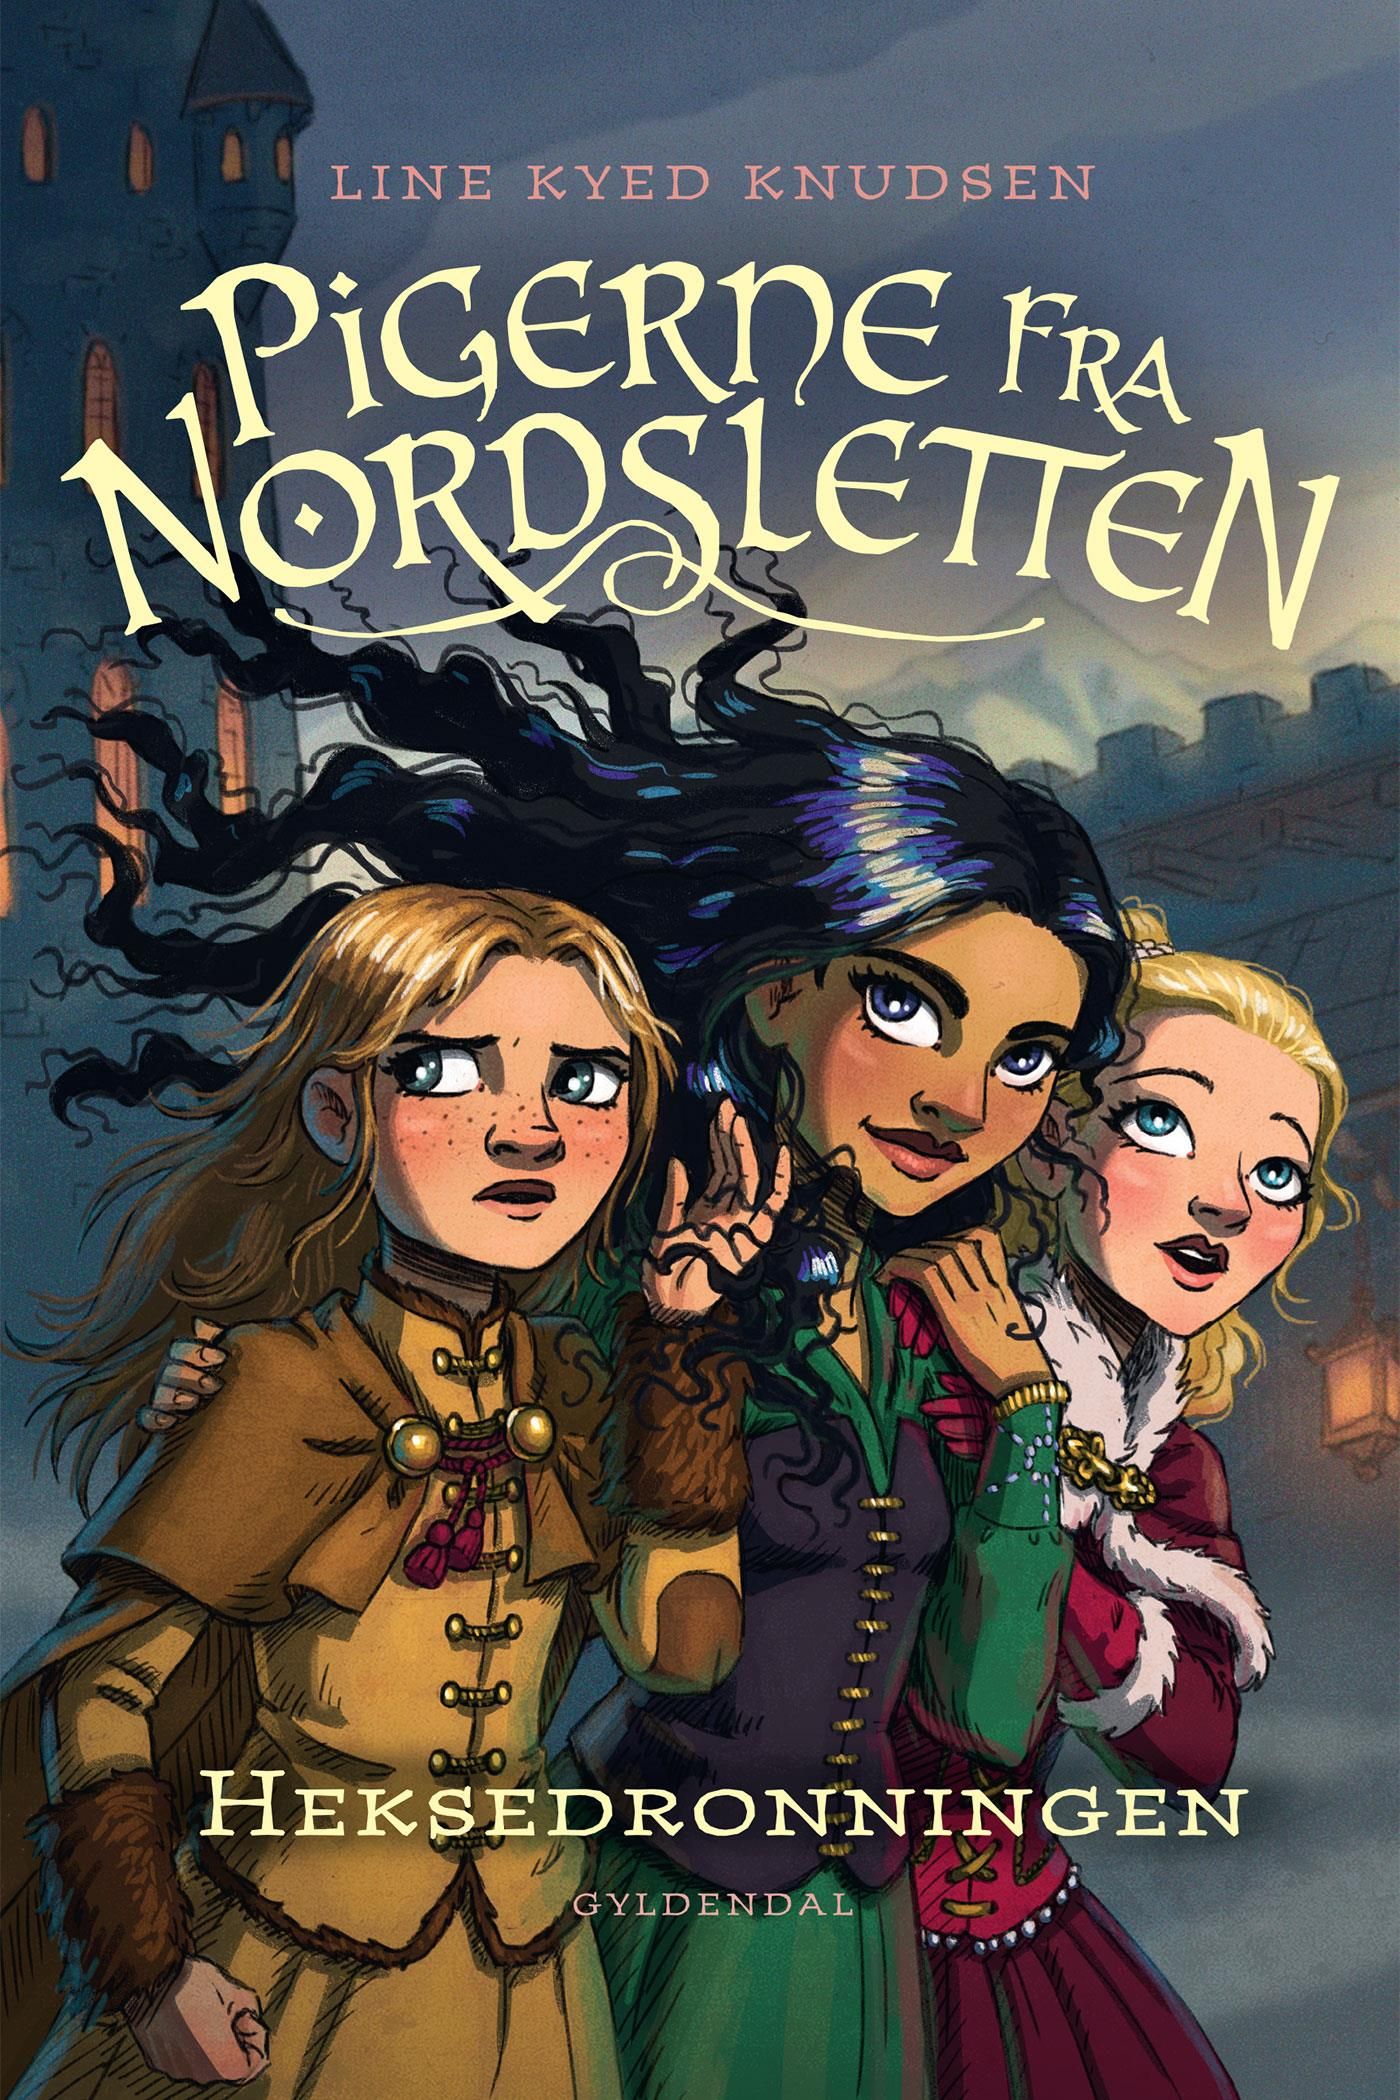 Pigerne fra Nordsletten 2 - Heksedronningen, eBook by Line Kyed Knudsen